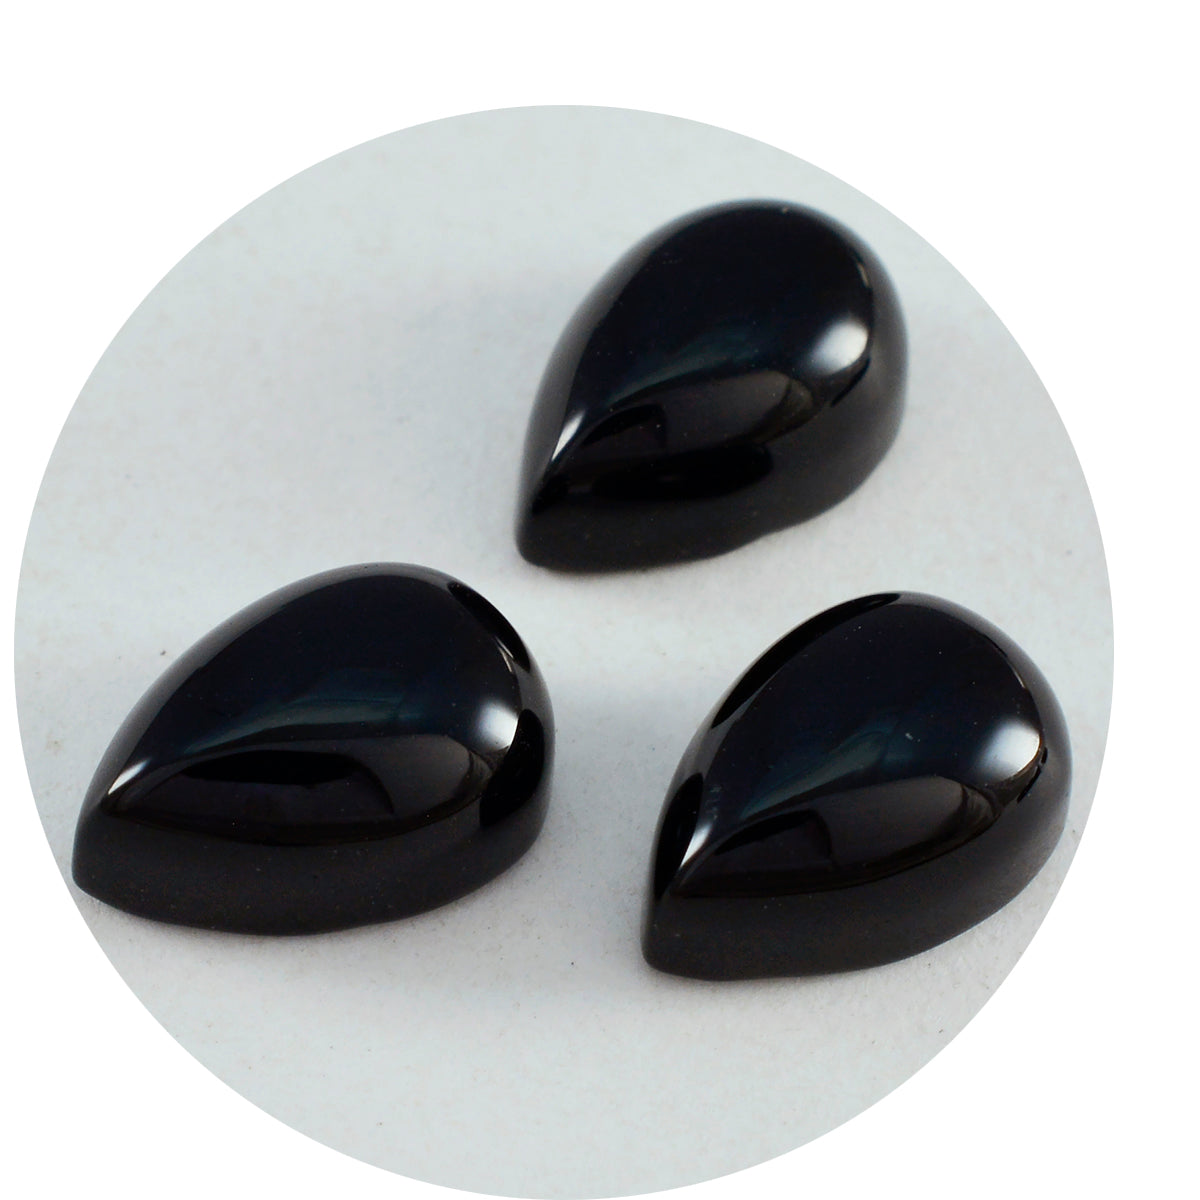 riyogems 1 шт., кабошон из черного оникса 8x12 мм, милые качественные драгоценные камни грушевидной формы